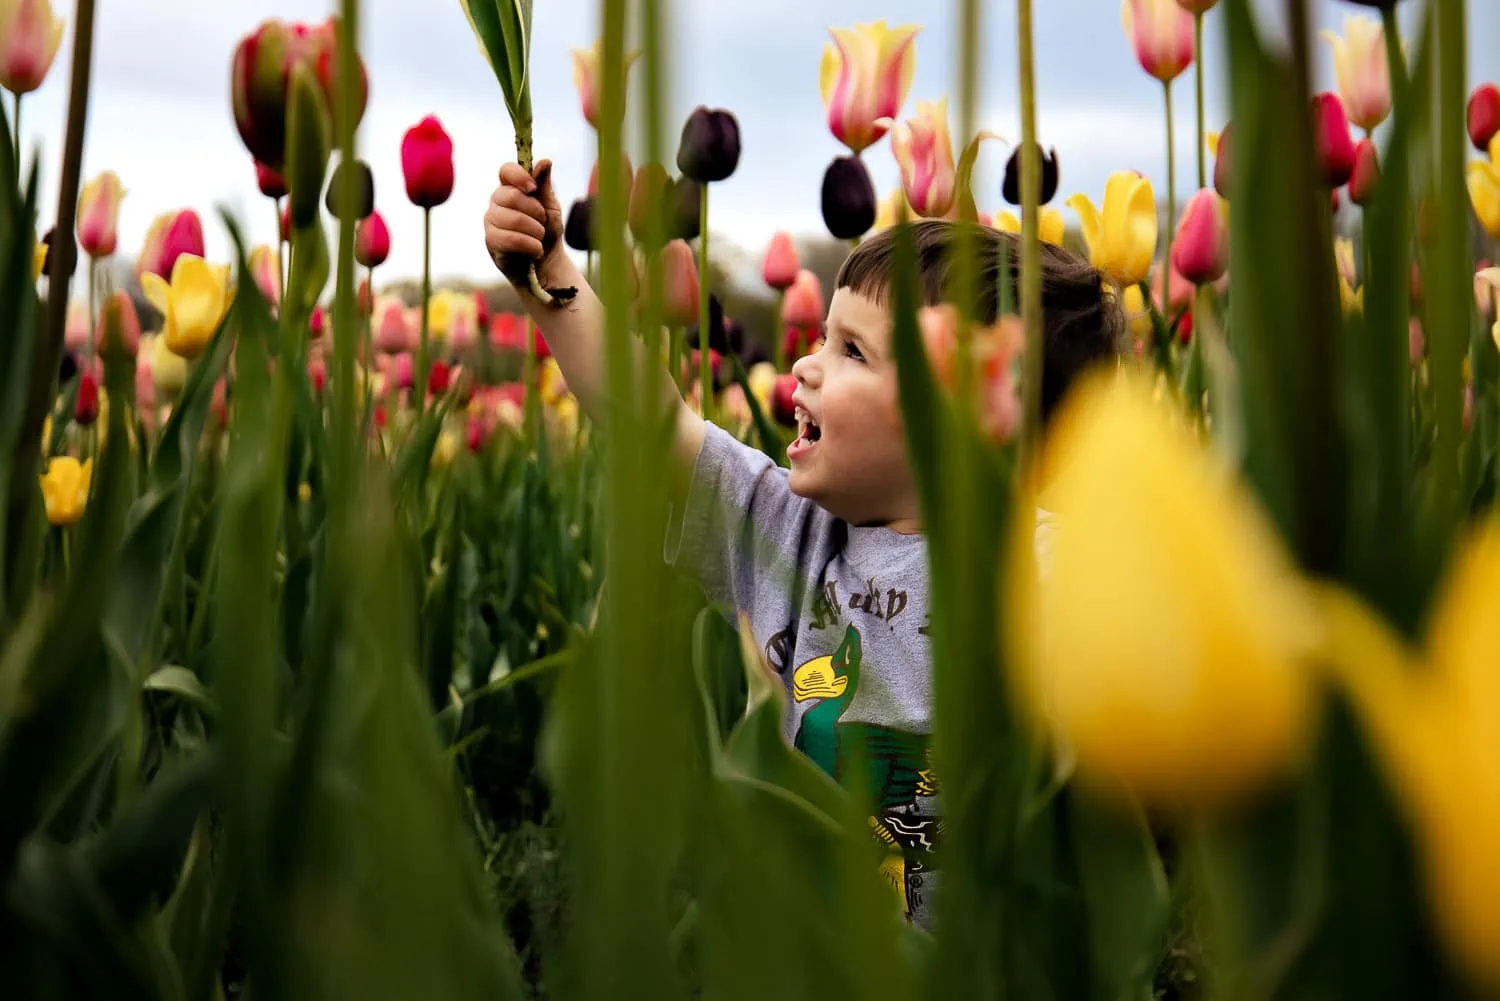 A little boy in a field of tulips